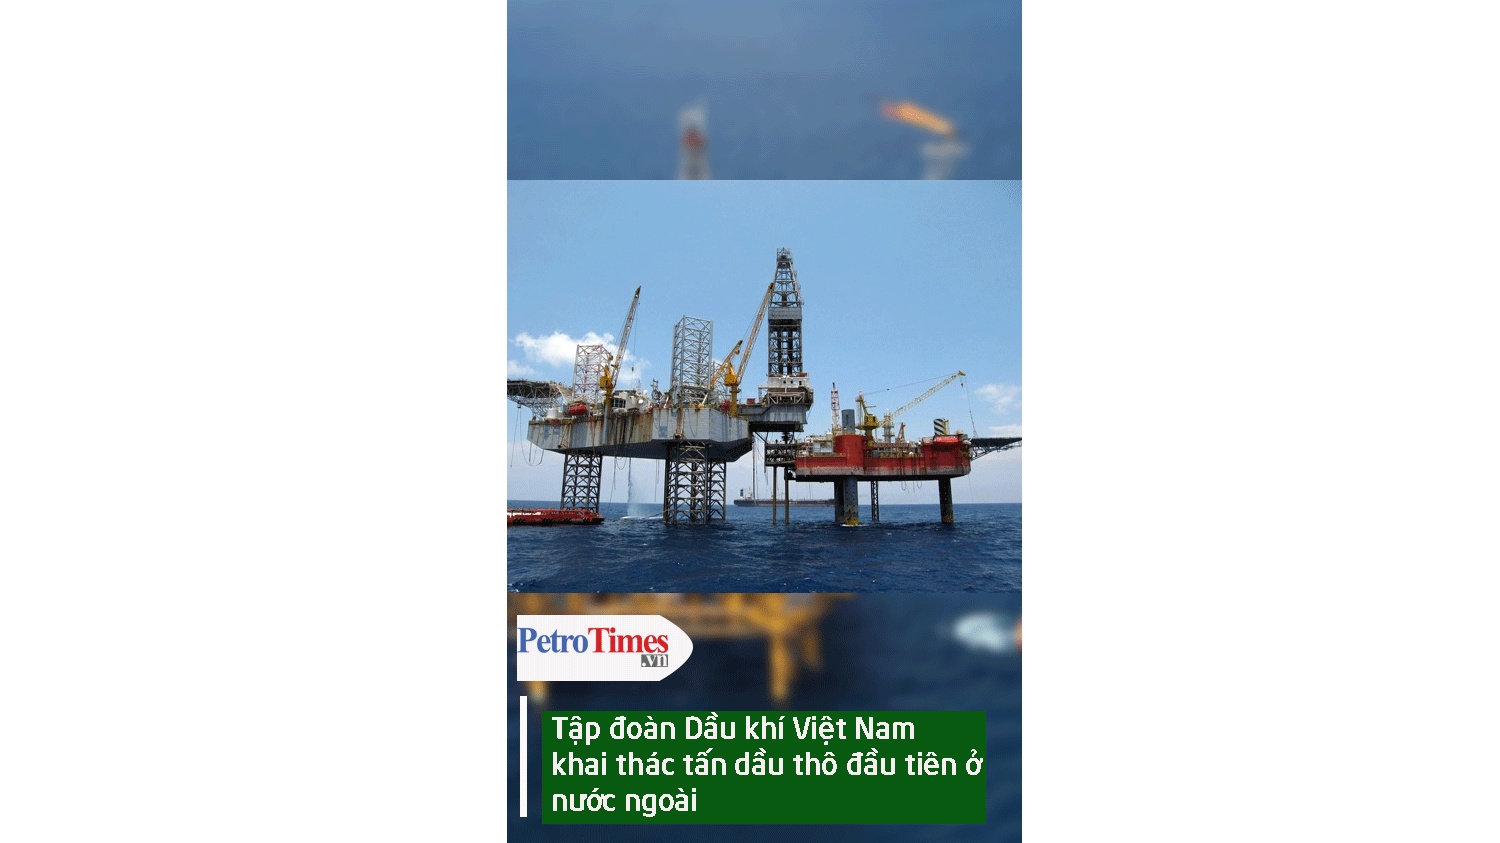 [Video] Tập đoàn Dầu khí Việt Nam khai thác tấn dầu thô đầu tiên ở nước ngoài